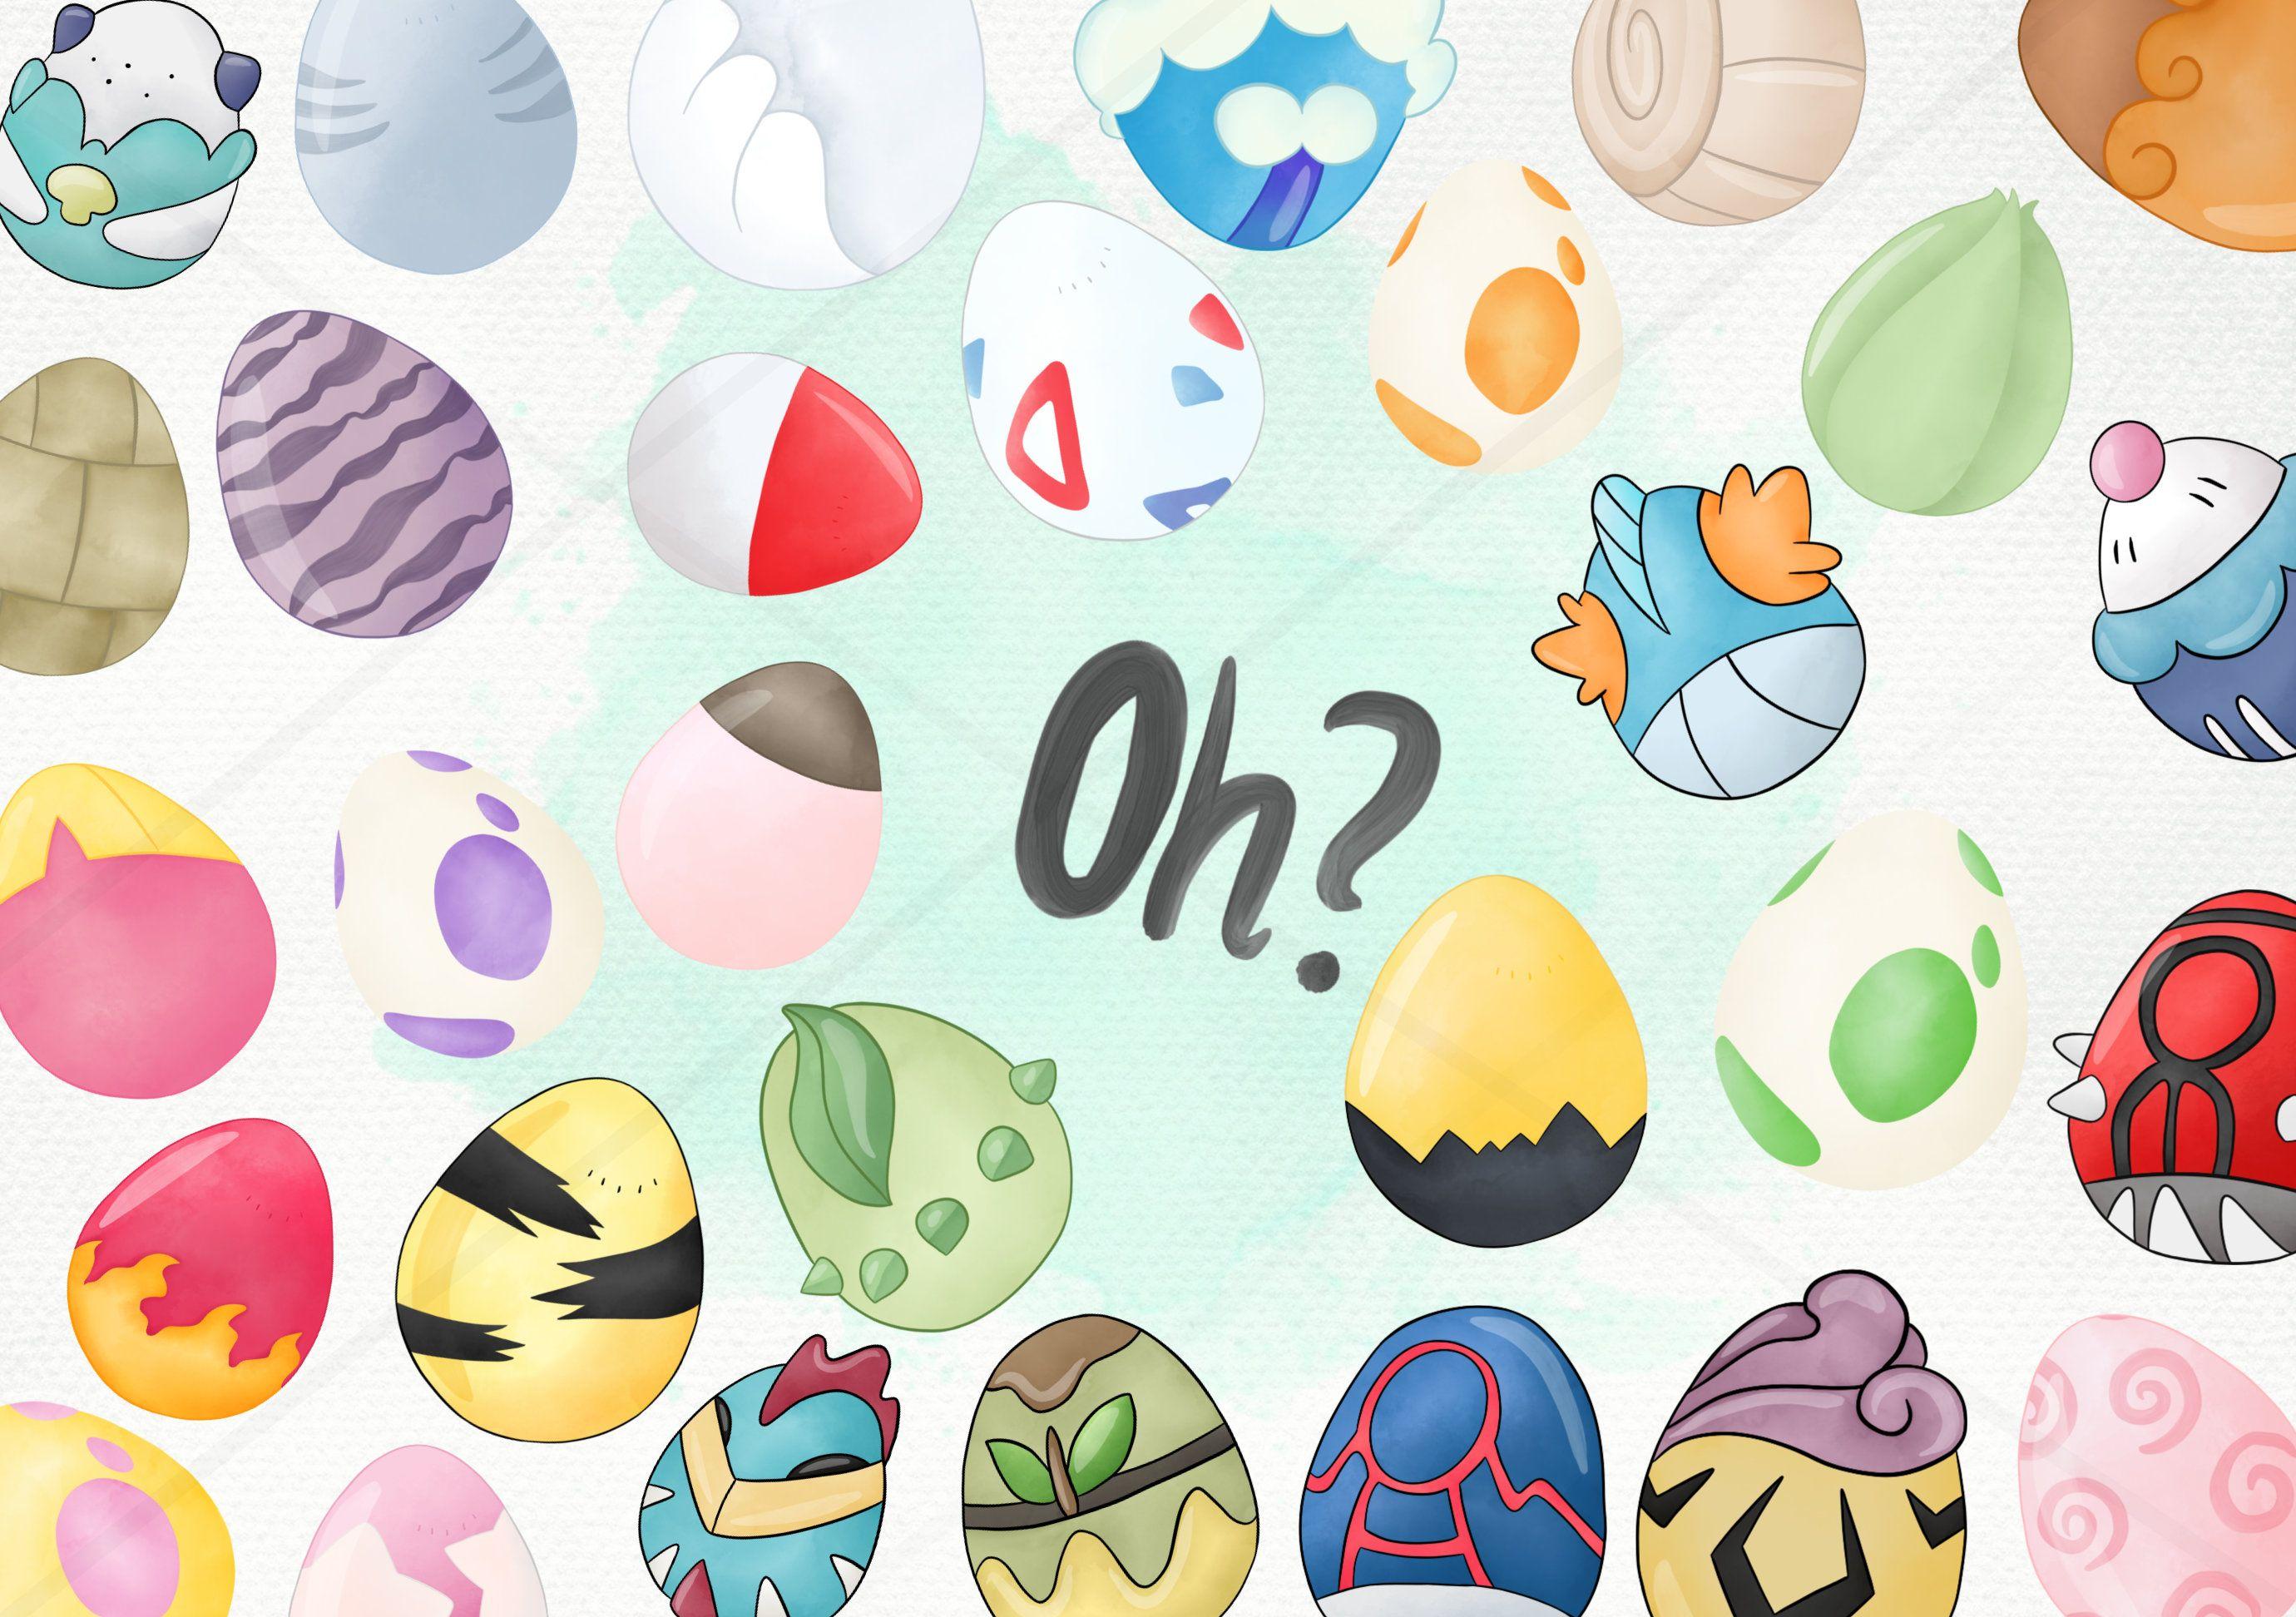 30 Clipart Easter Egg Watercolor Pokemon Go Inspired Instant